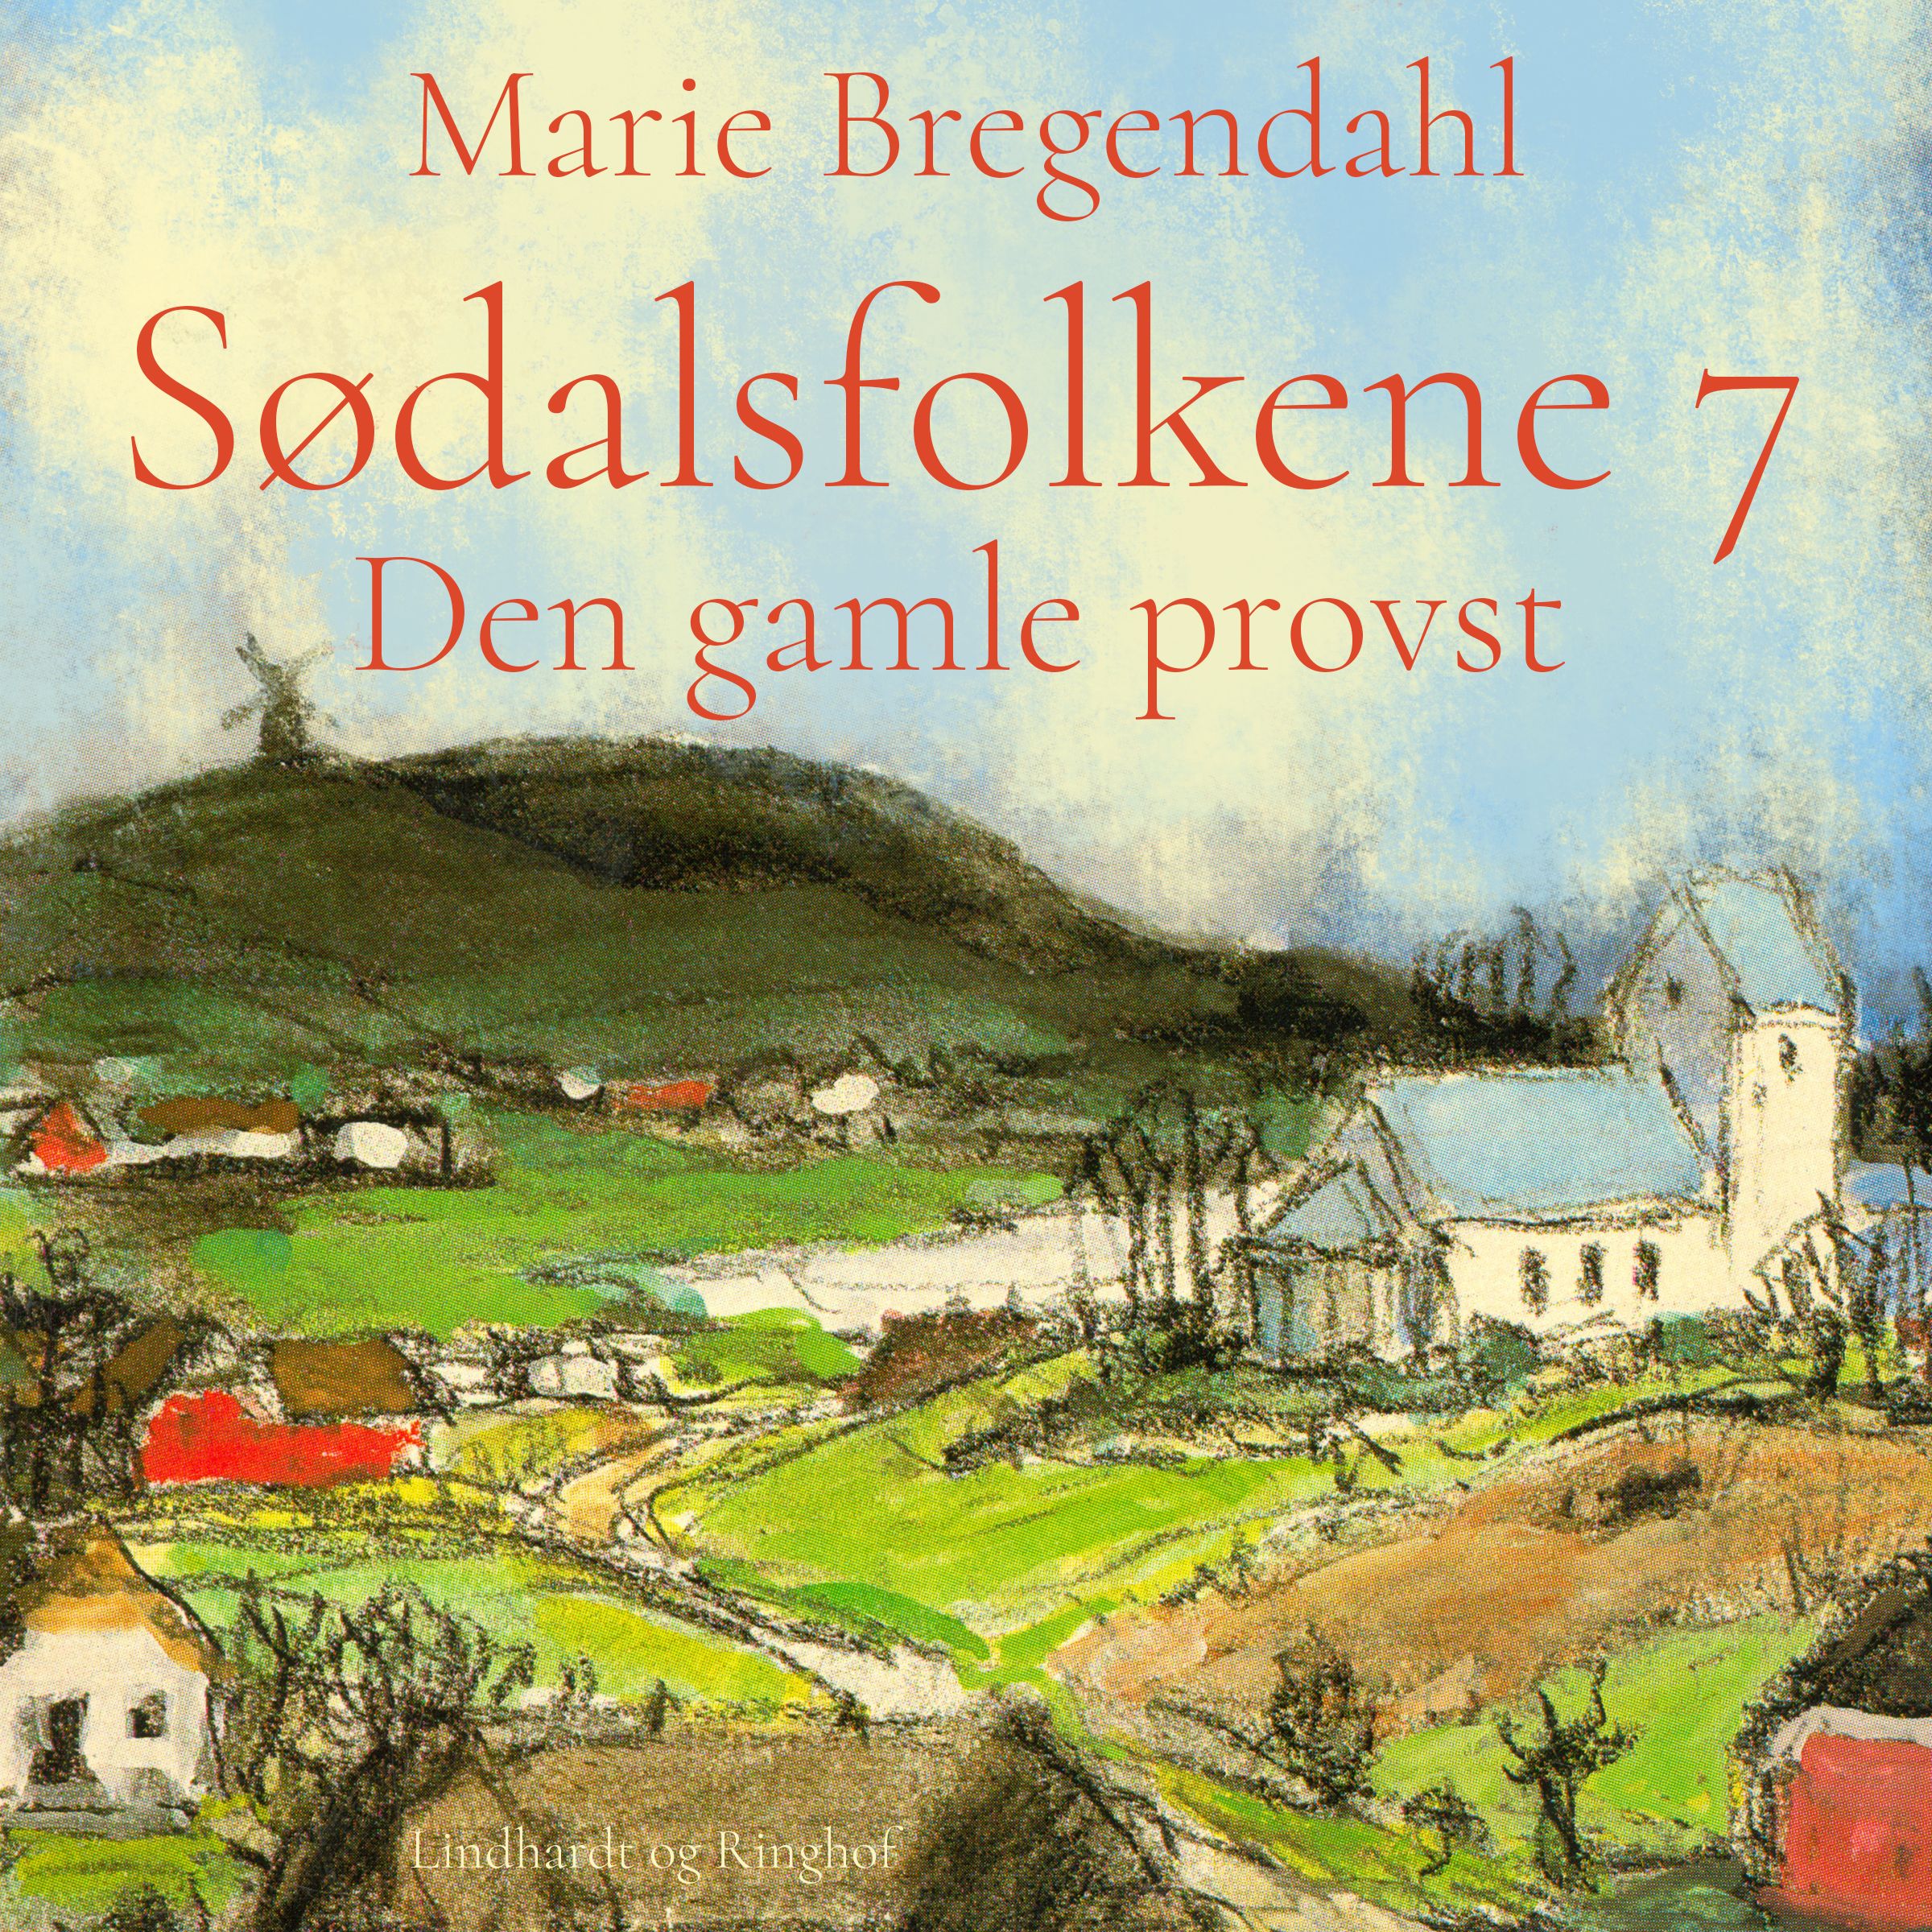 Sødalsfolkene - Den gamle provst, audiobook by Marie Bregendahl